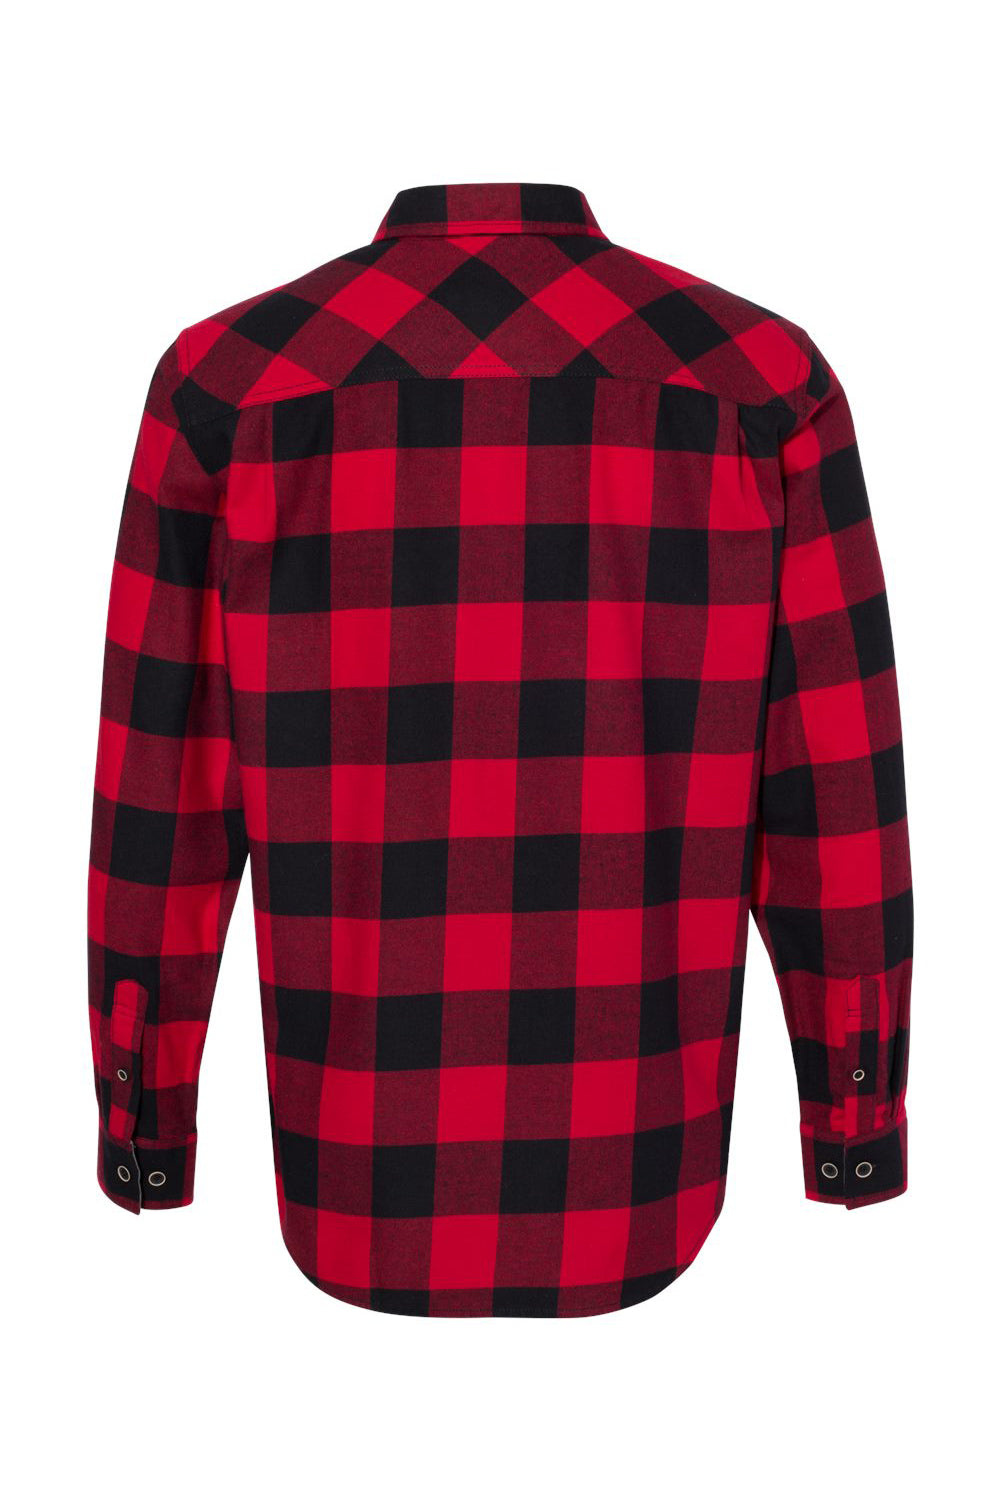 Weatherproof 164761 Mens Vintage Brushed Flannel Long Sleeve Button Down Shirt Crimson Red/Black Flat Back